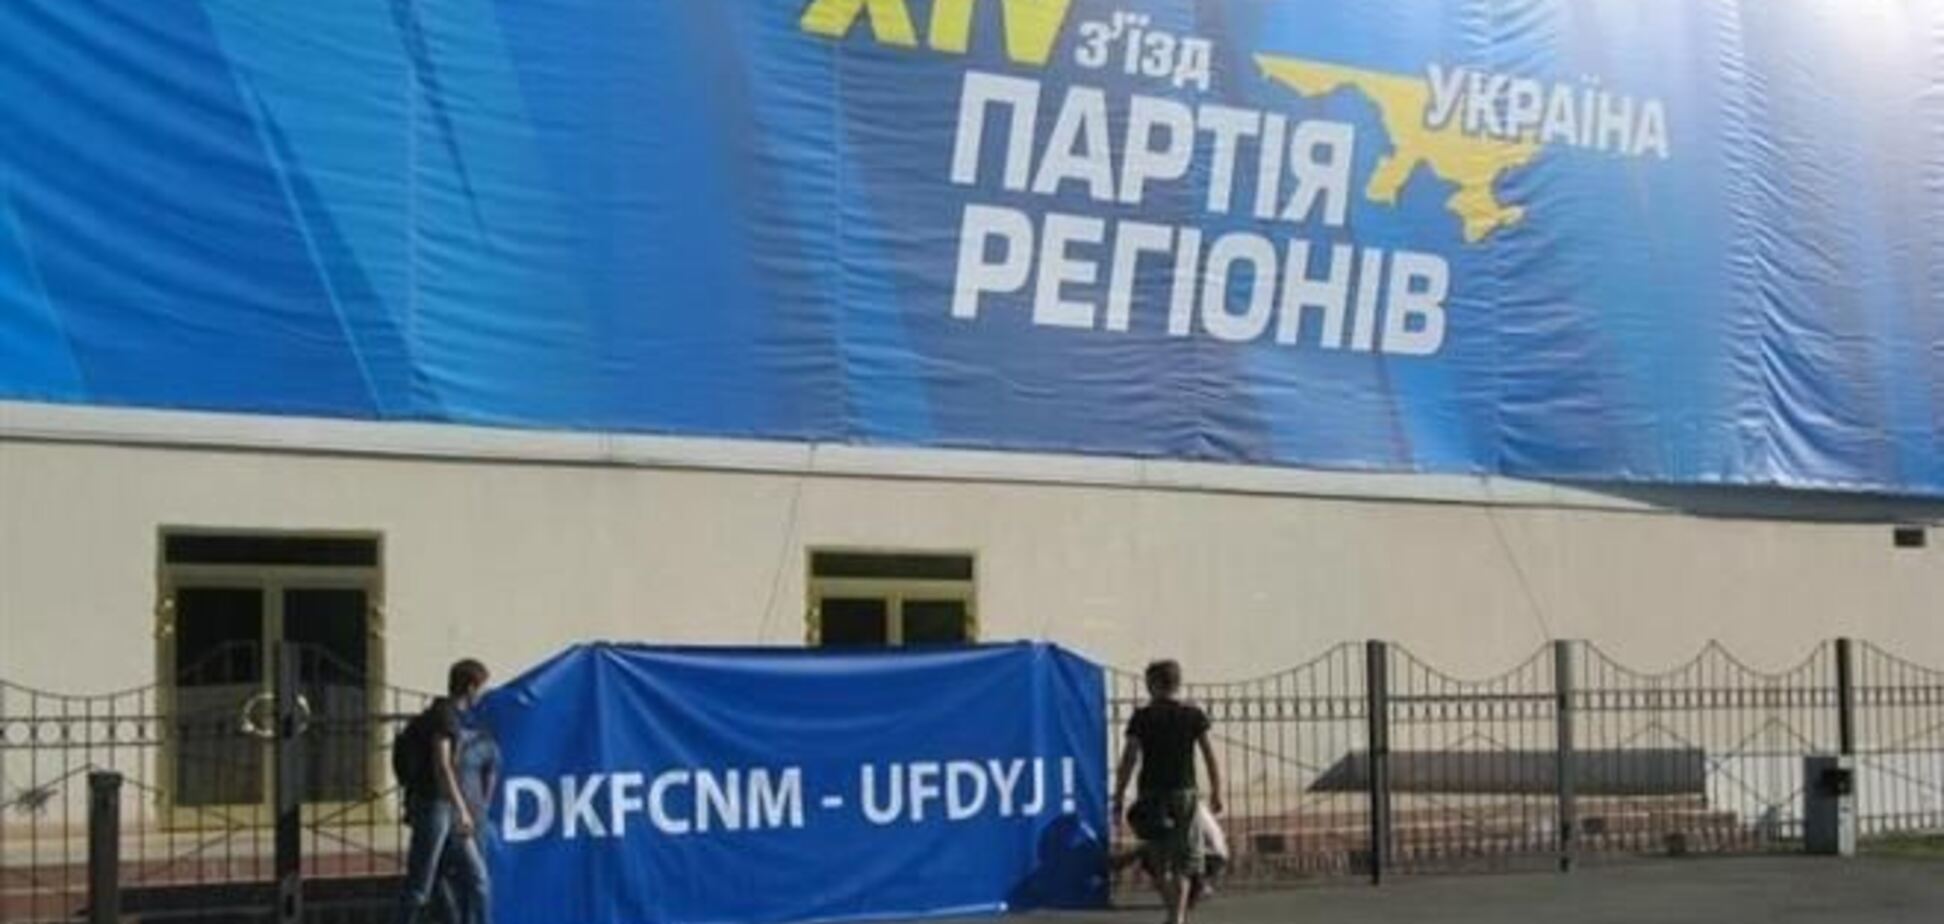 Партия регионов созывает съезд на 15 марта в Донецке